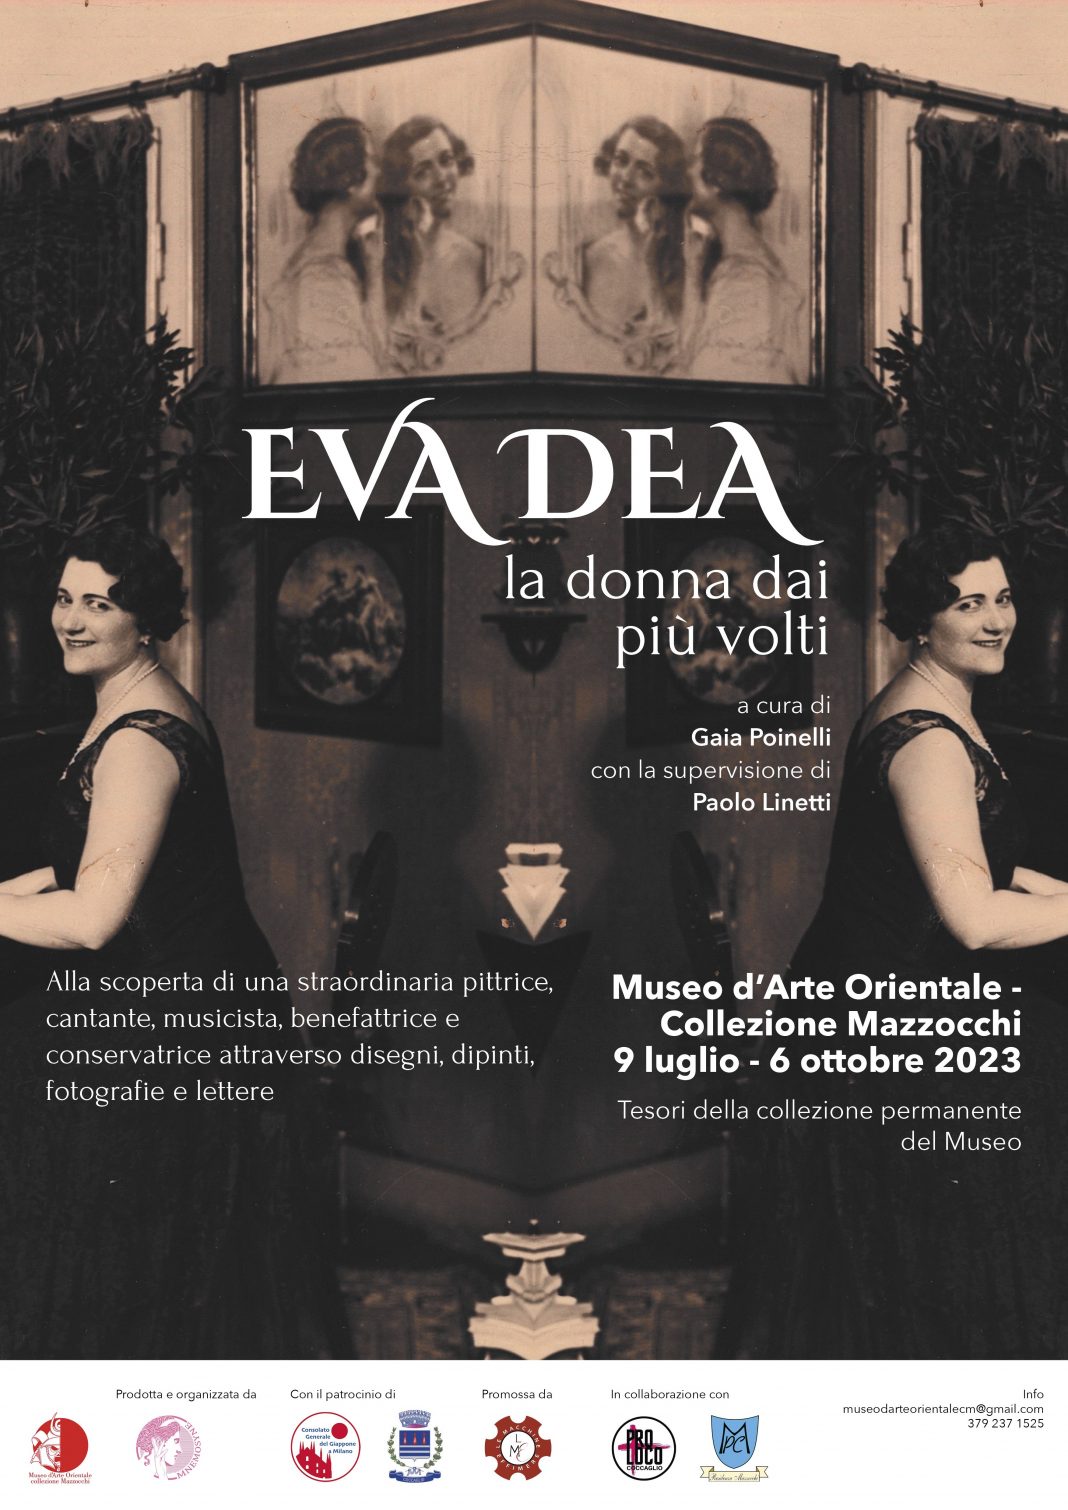 Eva Dea, la donna dai più voltihttps://www.exibart.com/repository/media/formidable/11/img/1a6/Locandina-1068x1510.jpg